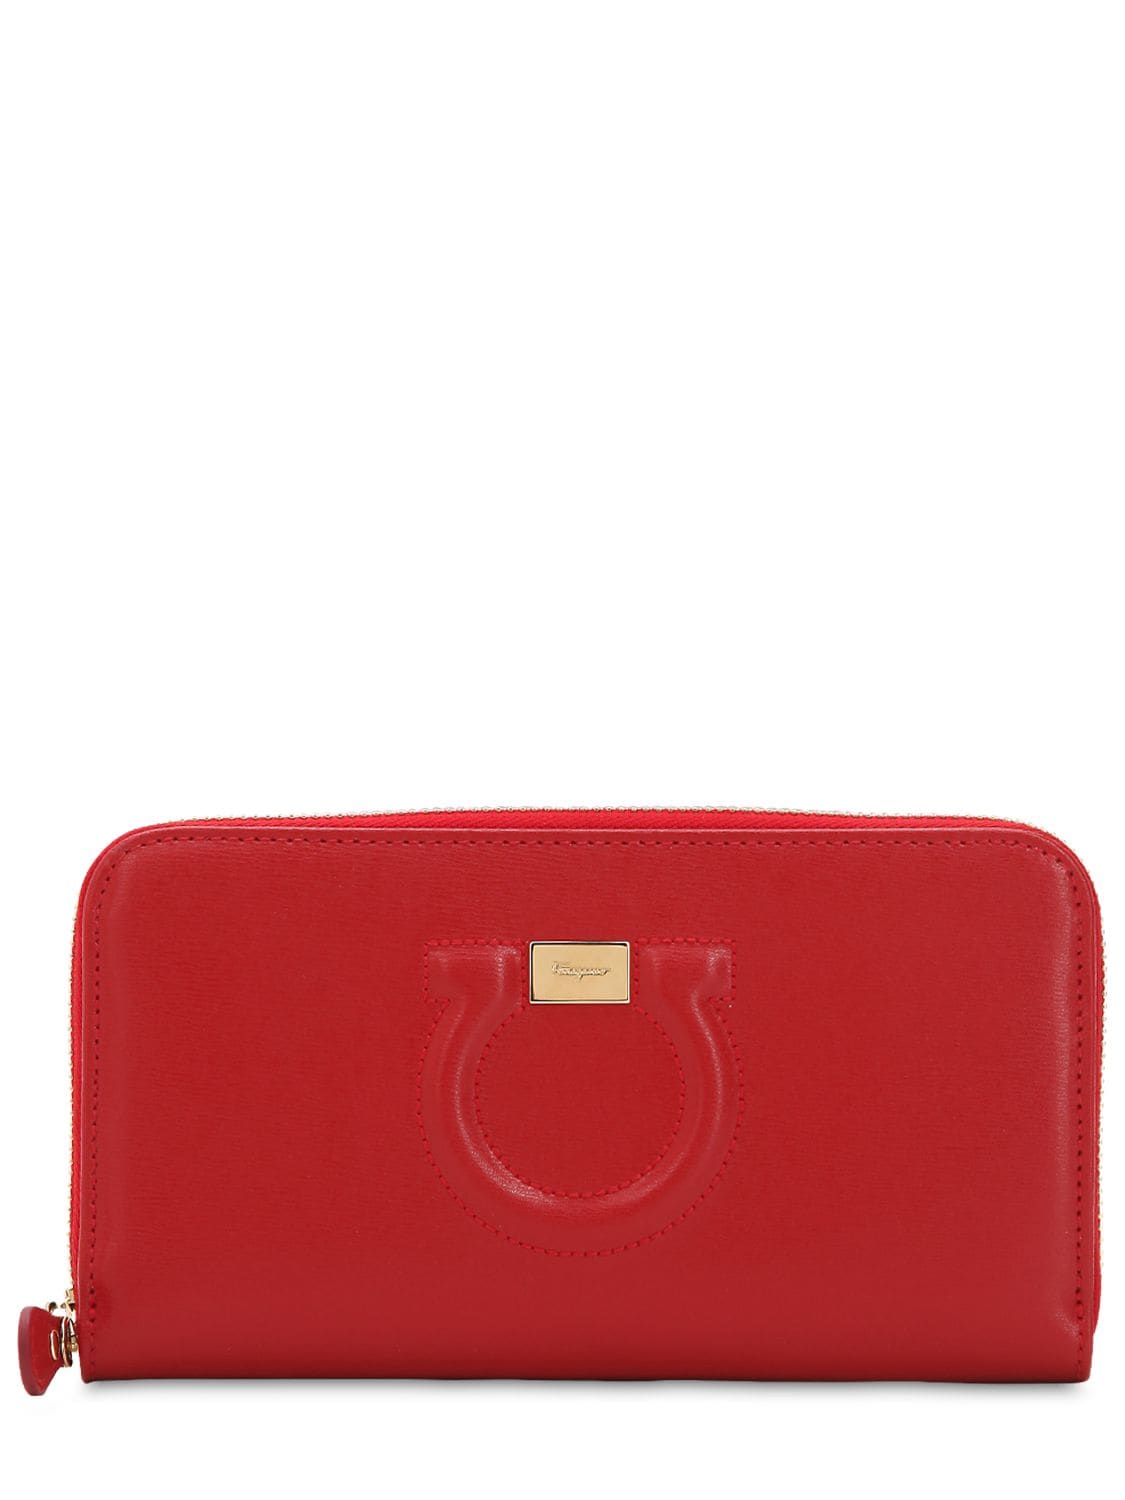 Ferragamo Gancino City Leather Classic Zip Wallet In Red